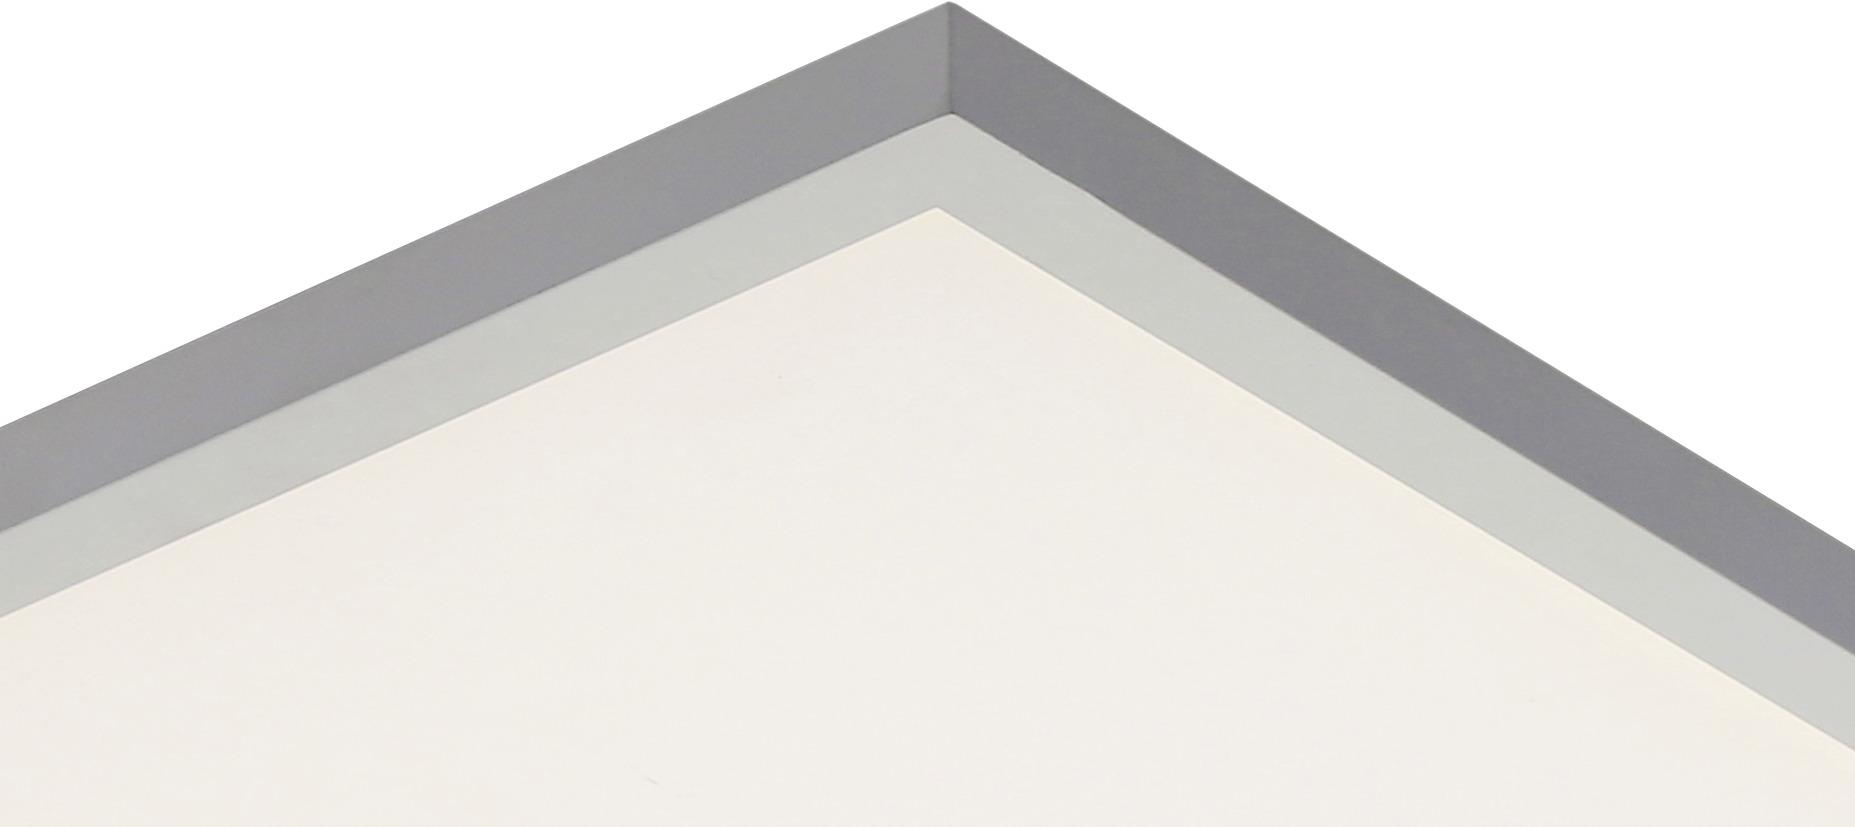 LED-Deckenleuchte Varena L: 60 cm mit Fernbedienung - Silberfarben/Weiß, MODERN, Kunststoff/Metall (60/60cm) - Luca Bessoni